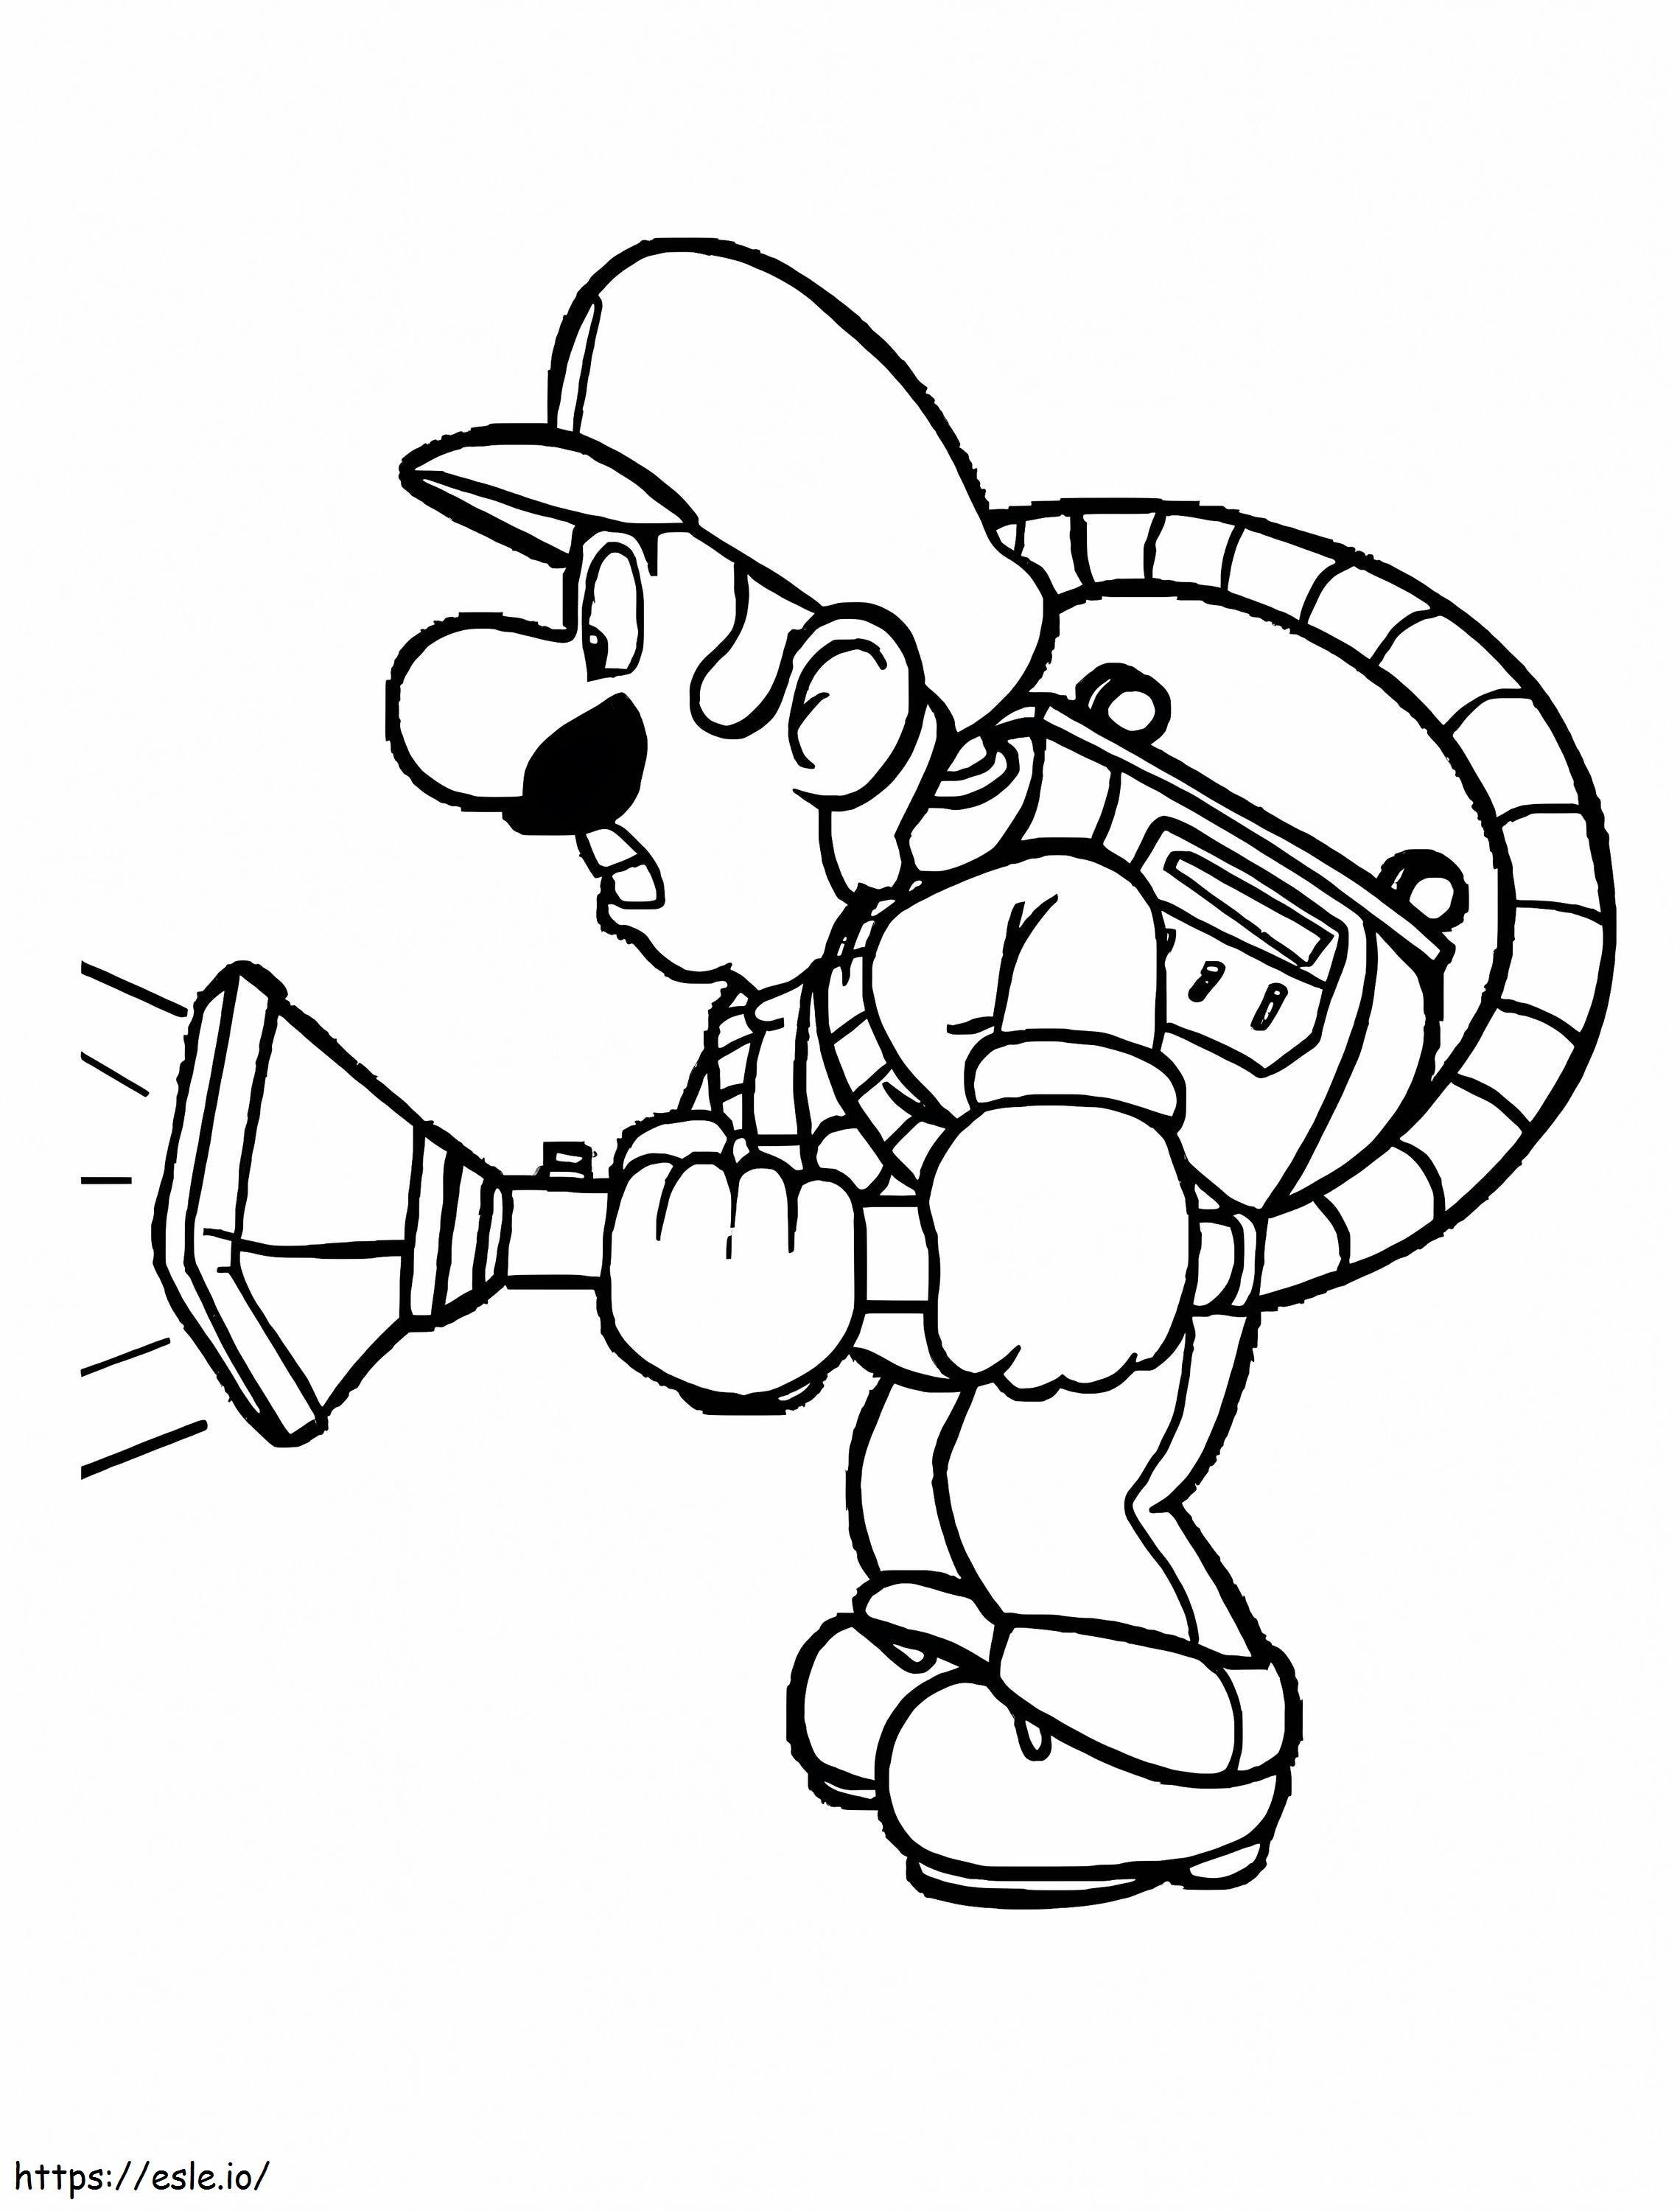 Luigi De Mario kleurplaat kleurplaat